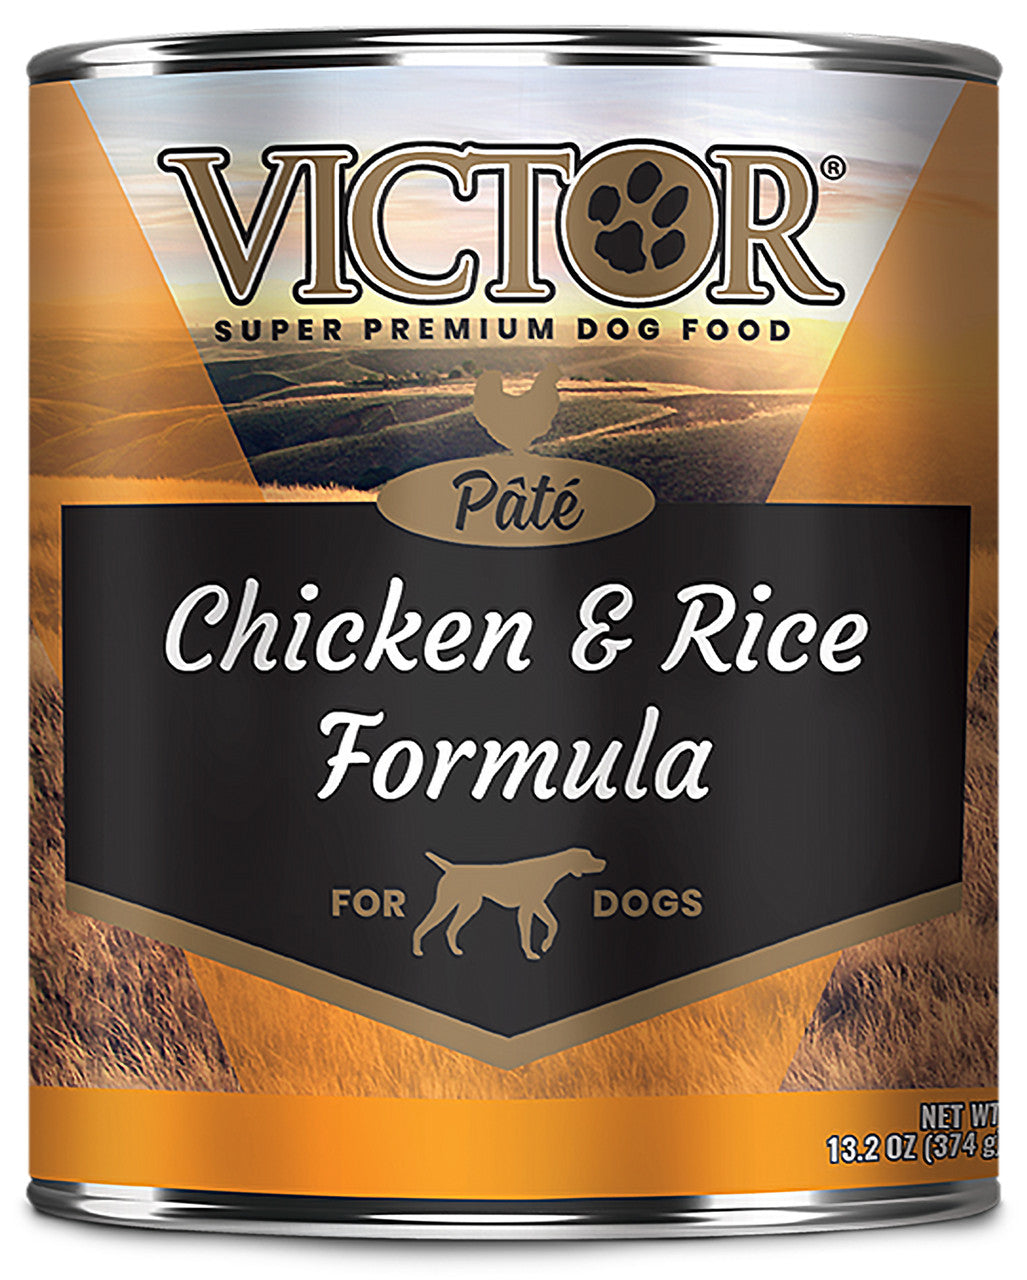 Victor Super Premium Dog Food Wet Dog Food Chicken & Rice Pate 13.2oz